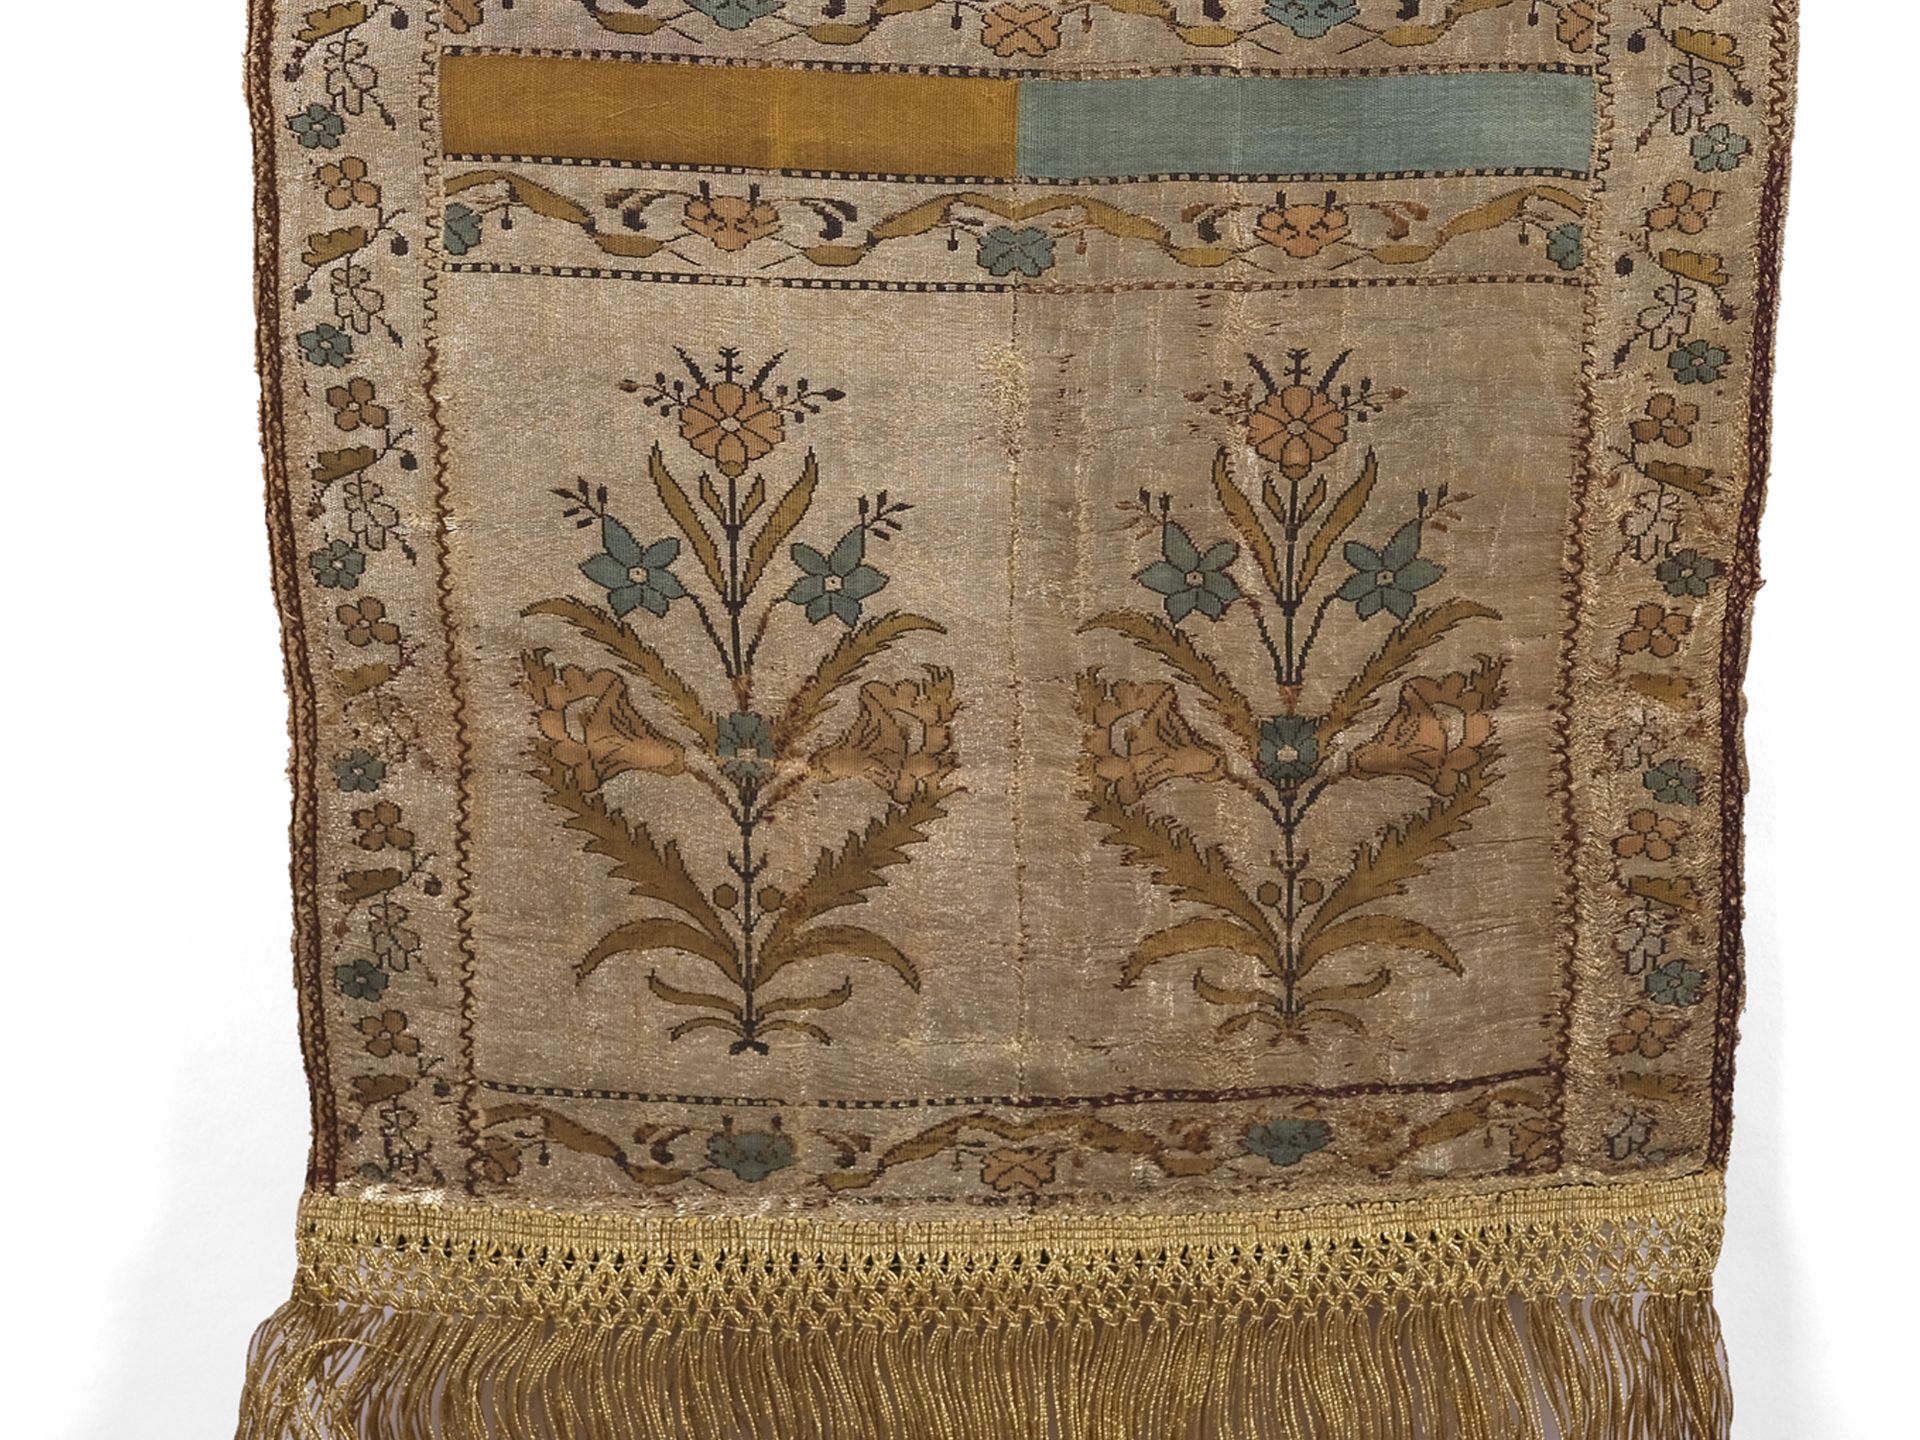 Textil mit Blumenmustern, indopersisch, 18./19. Jahrhundert - Bild 4 aus 5